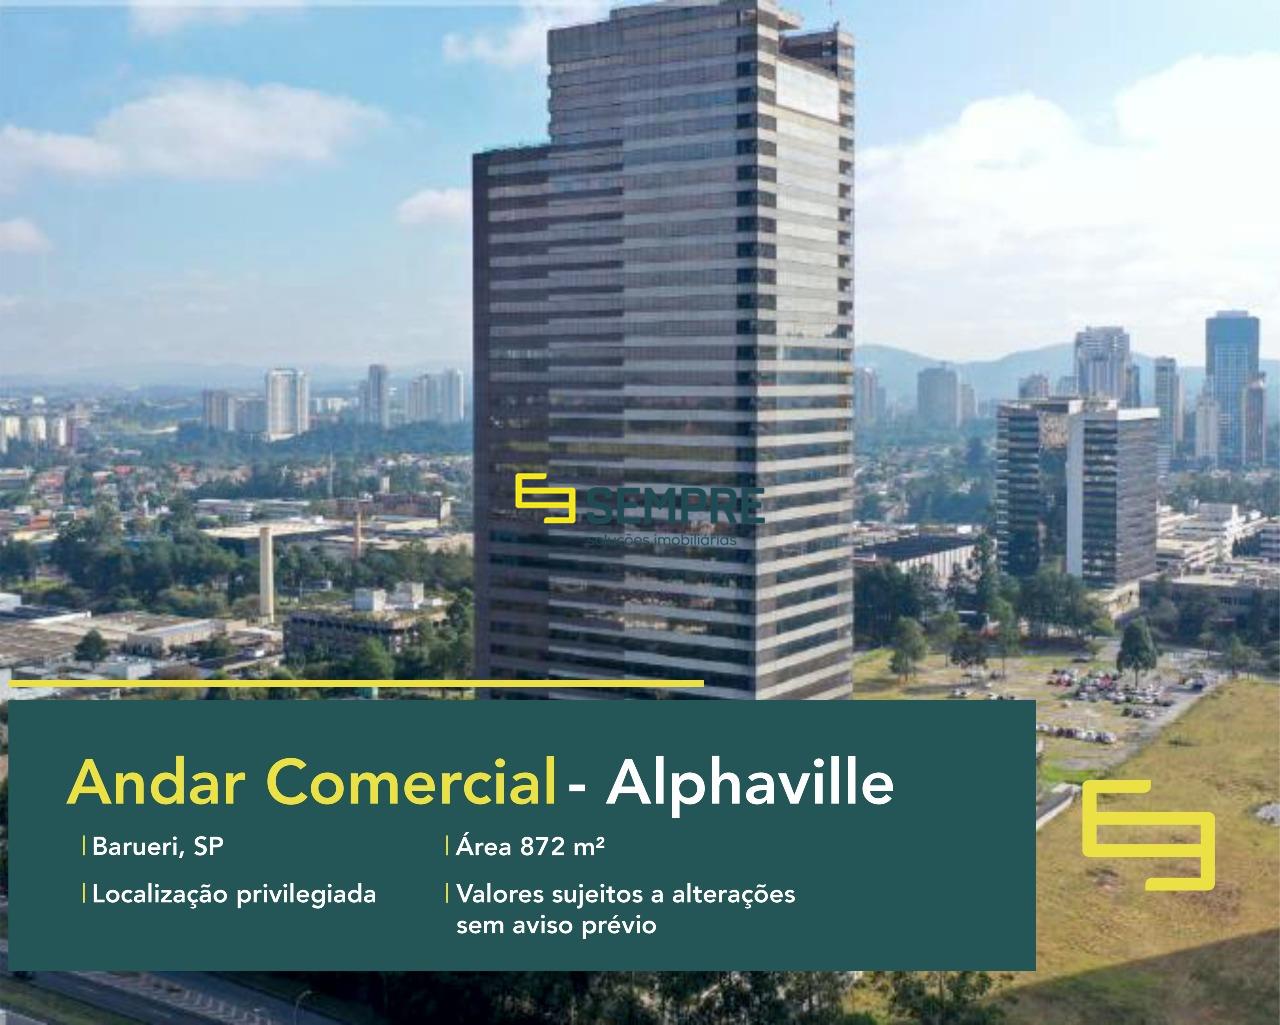 Locação de laje corporativa no Alphaville - Evolution Corporate. O estabelecimento comercial conta, sobretudo, com área de 872,04 m².